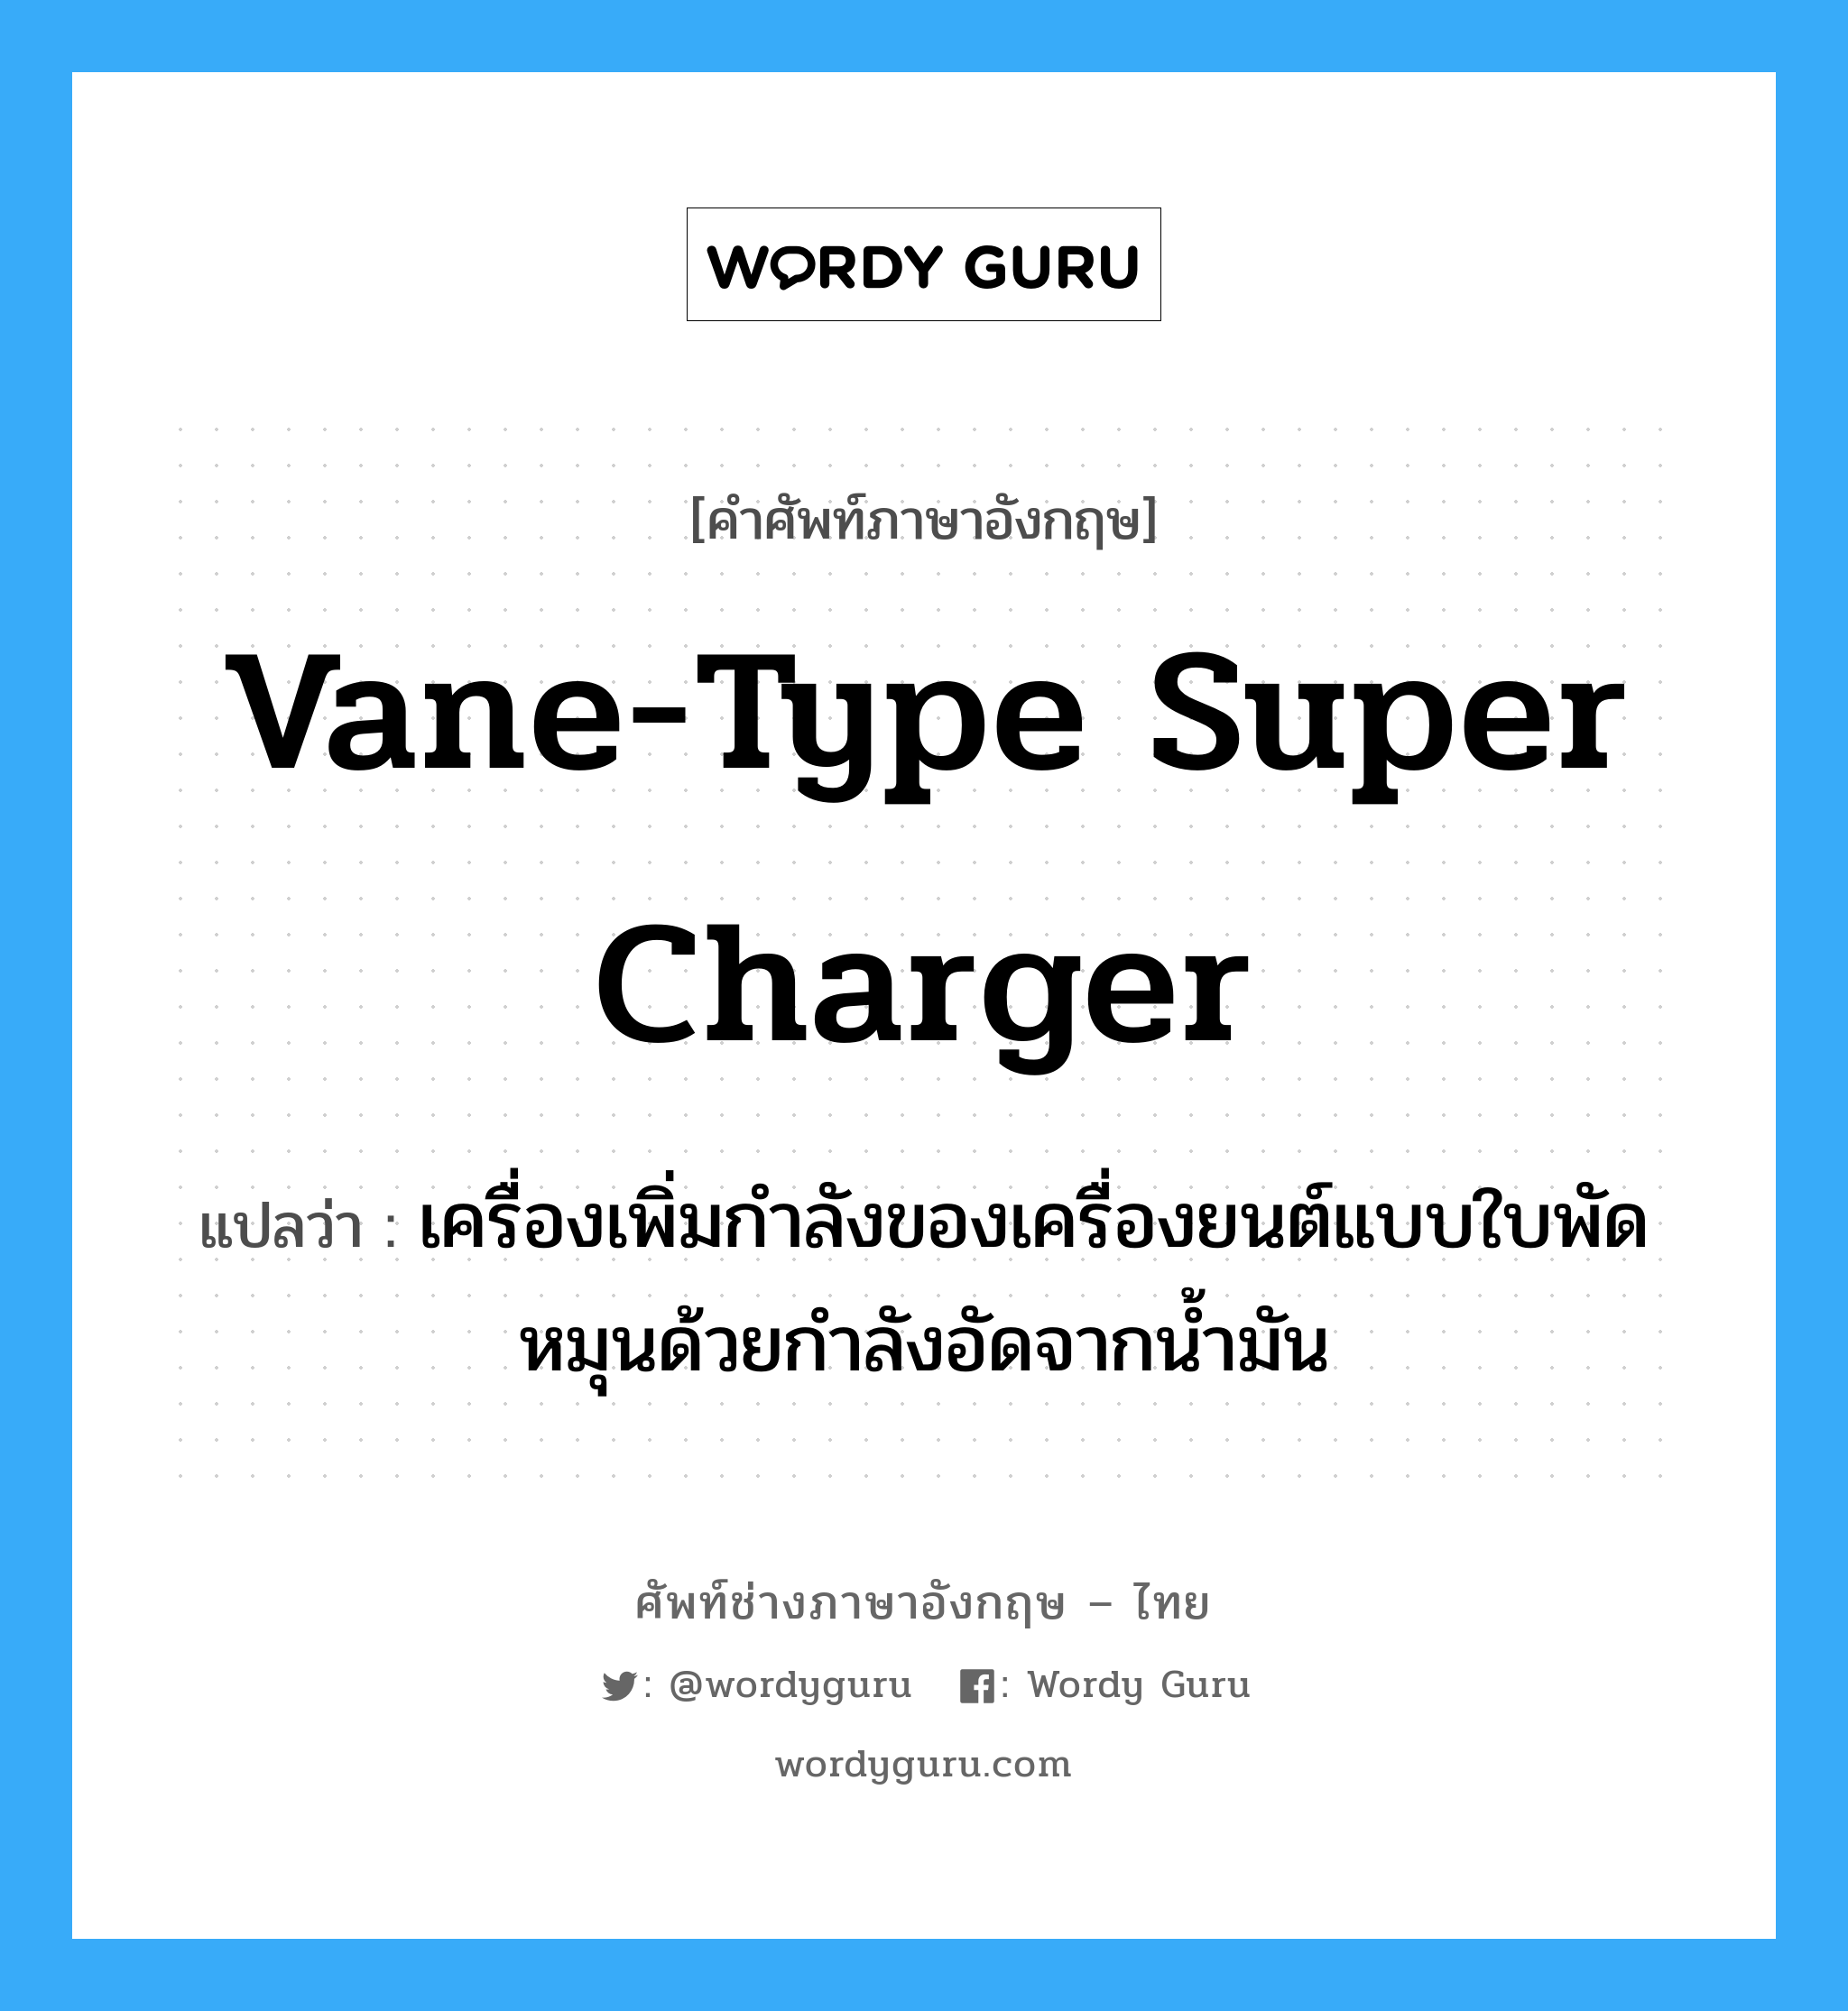 vane-type super charger แปลว่า?, คำศัพท์ช่างภาษาอังกฤษ - ไทย vane-type super charger คำศัพท์ภาษาอังกฤษ vane-type super charger แปลว่า เครื่องเพิ่มกำลังของเครื่องยนต์แบบใบพัดหมุนด้วยกำลังอัดจากน้ำมัน